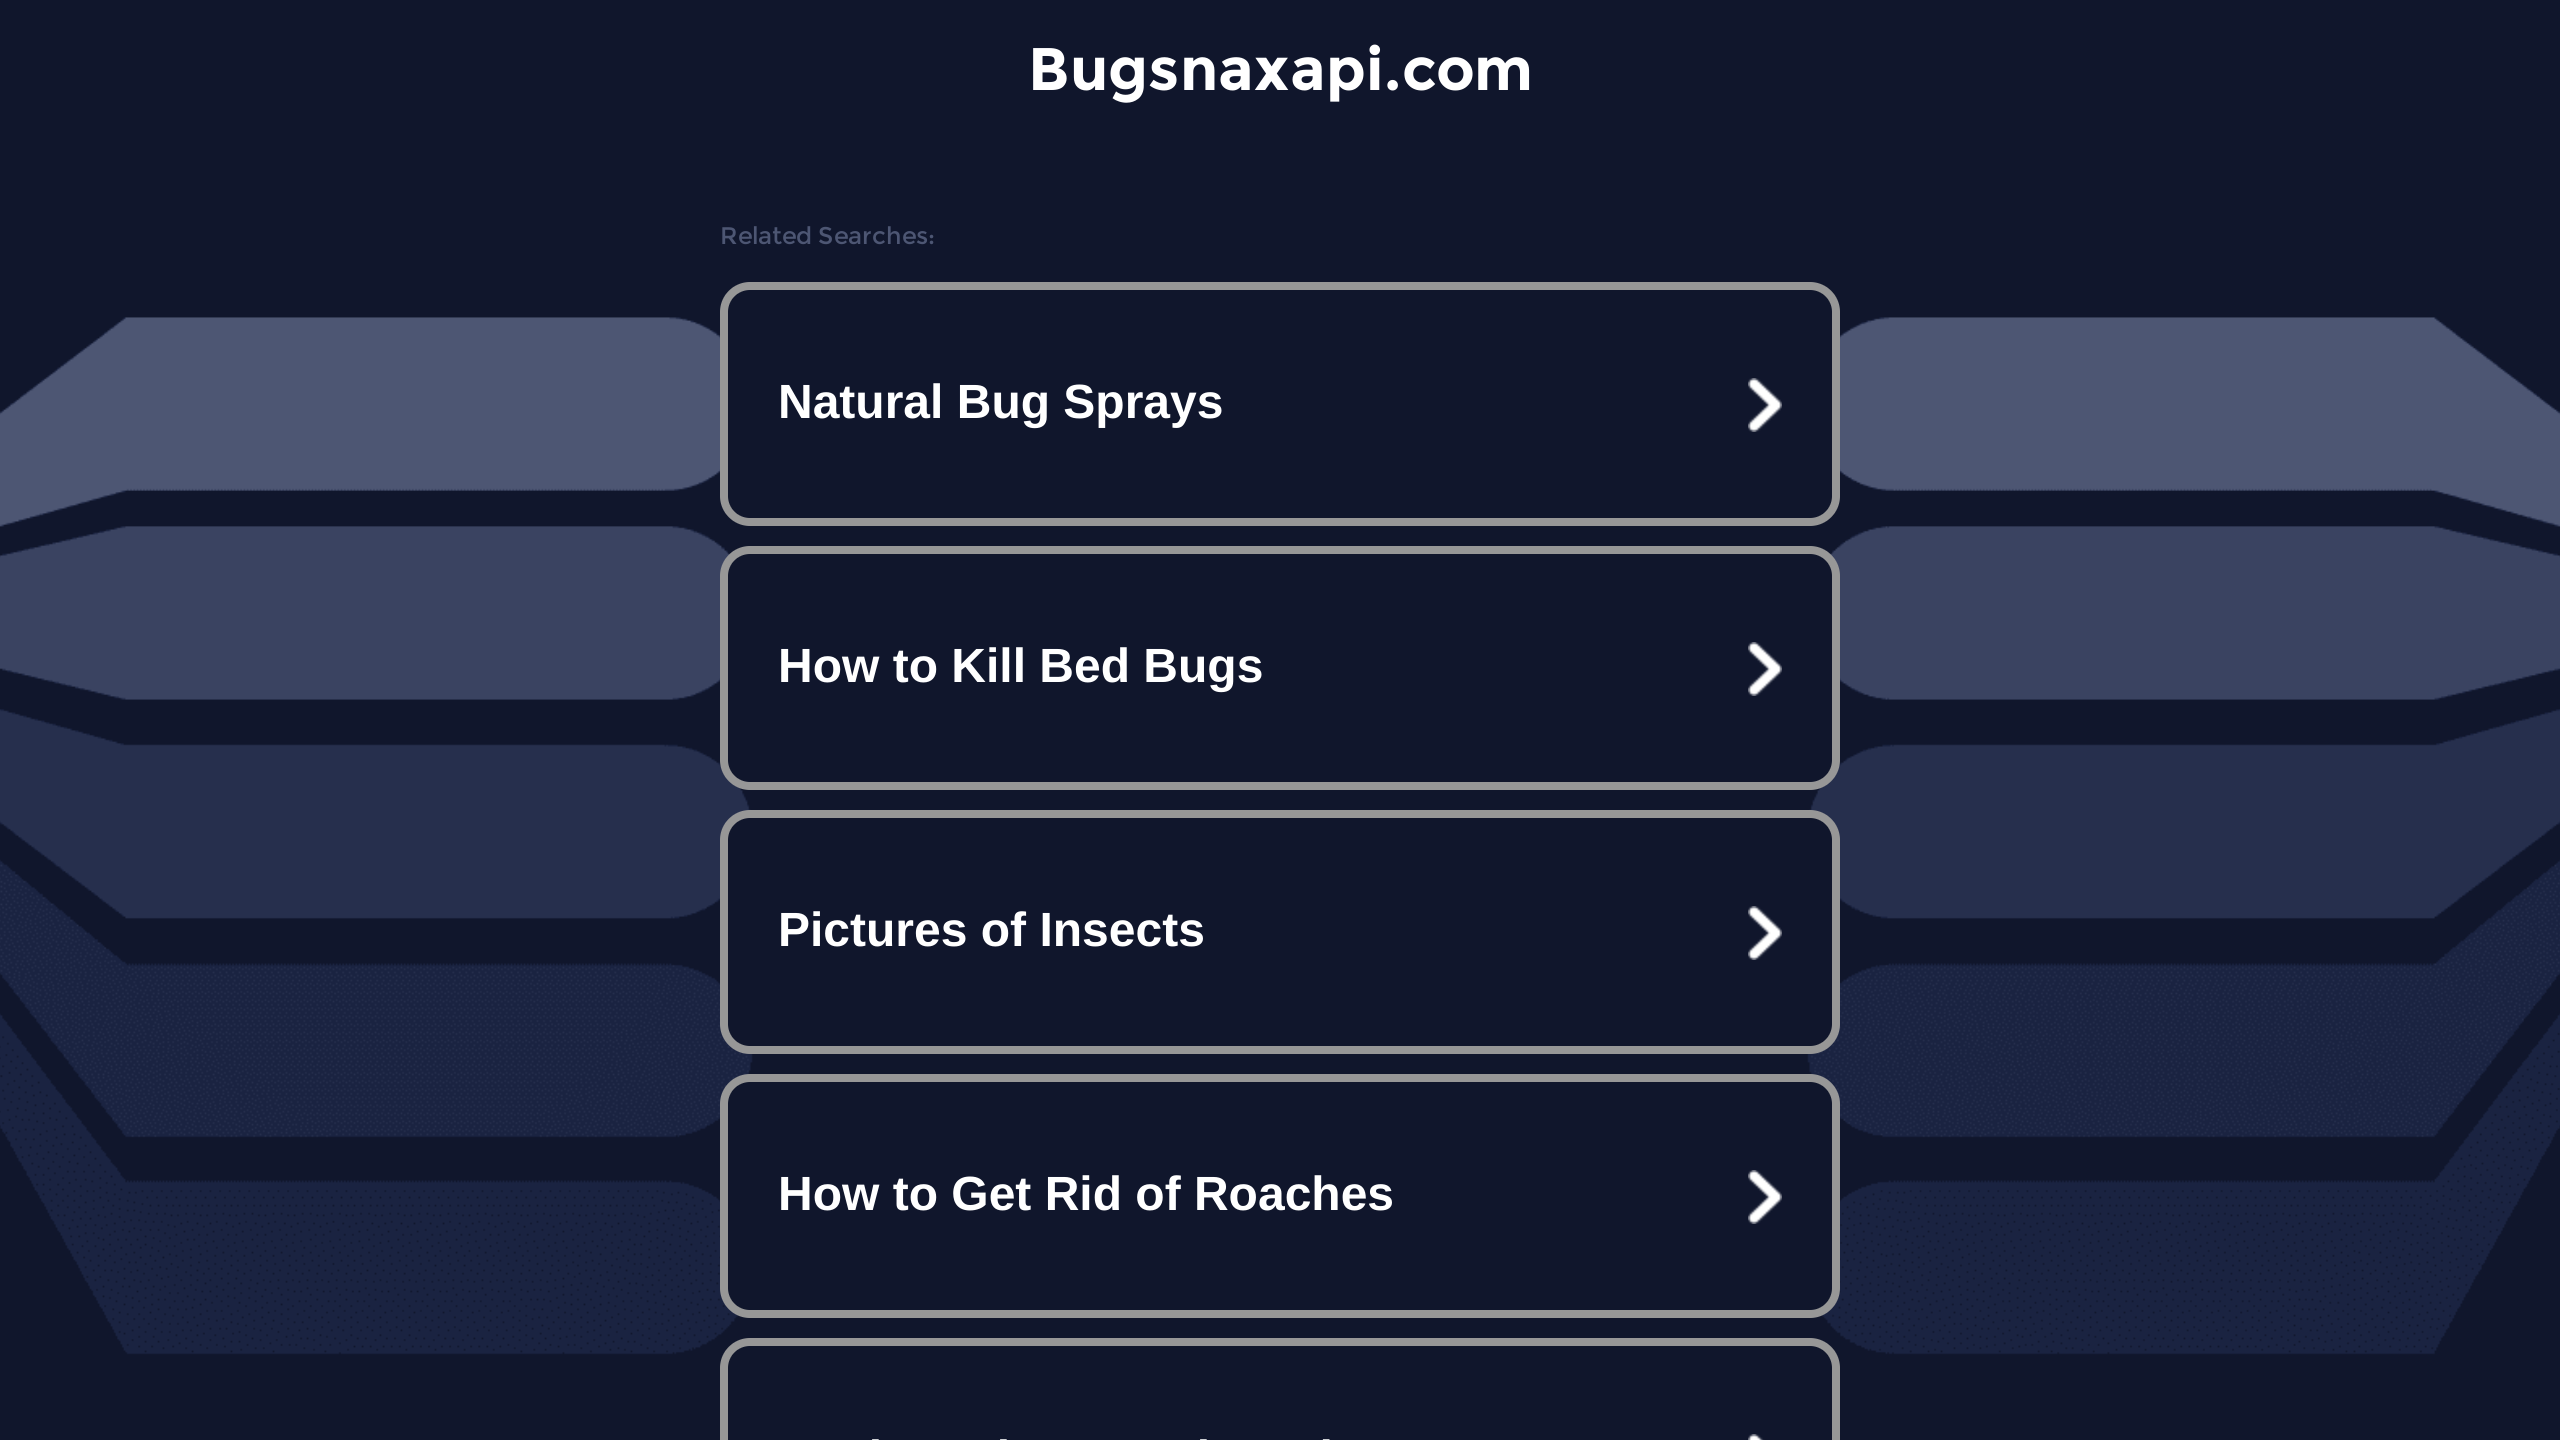 Bugsnax's website screenshot